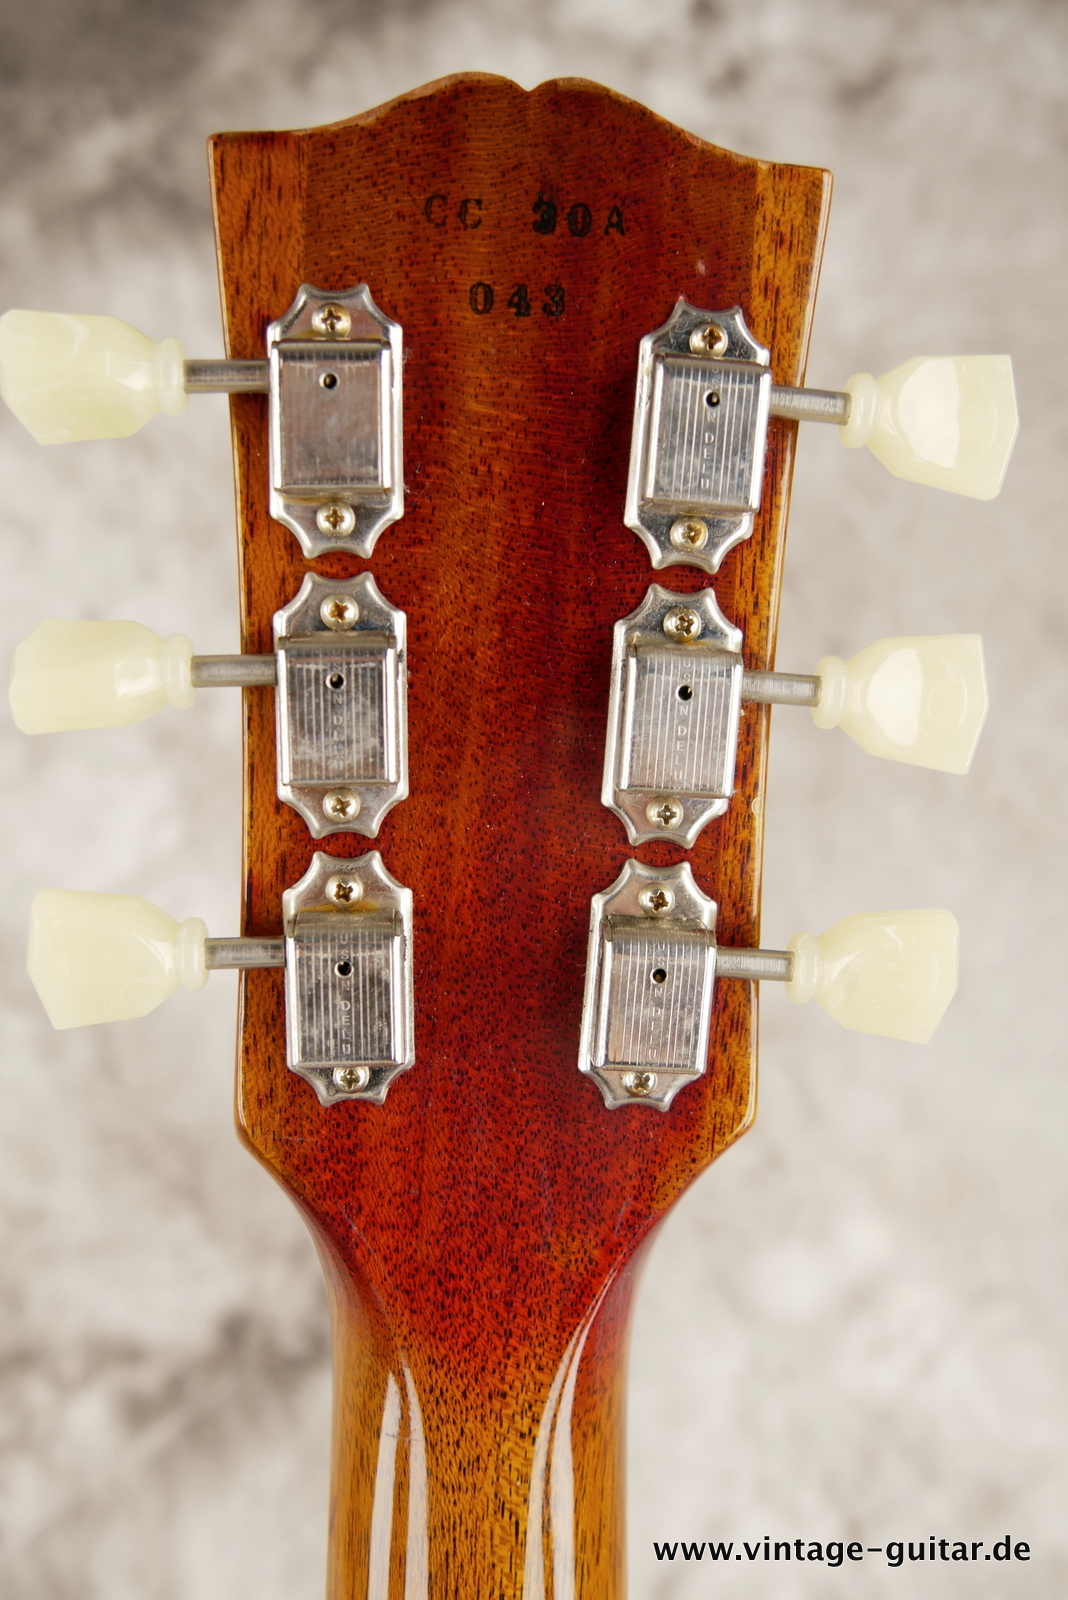 img/vintage/5428/Gibson-Les-Paul-1959-CC30A-Gabby-Collectors-Choice-006.JPG